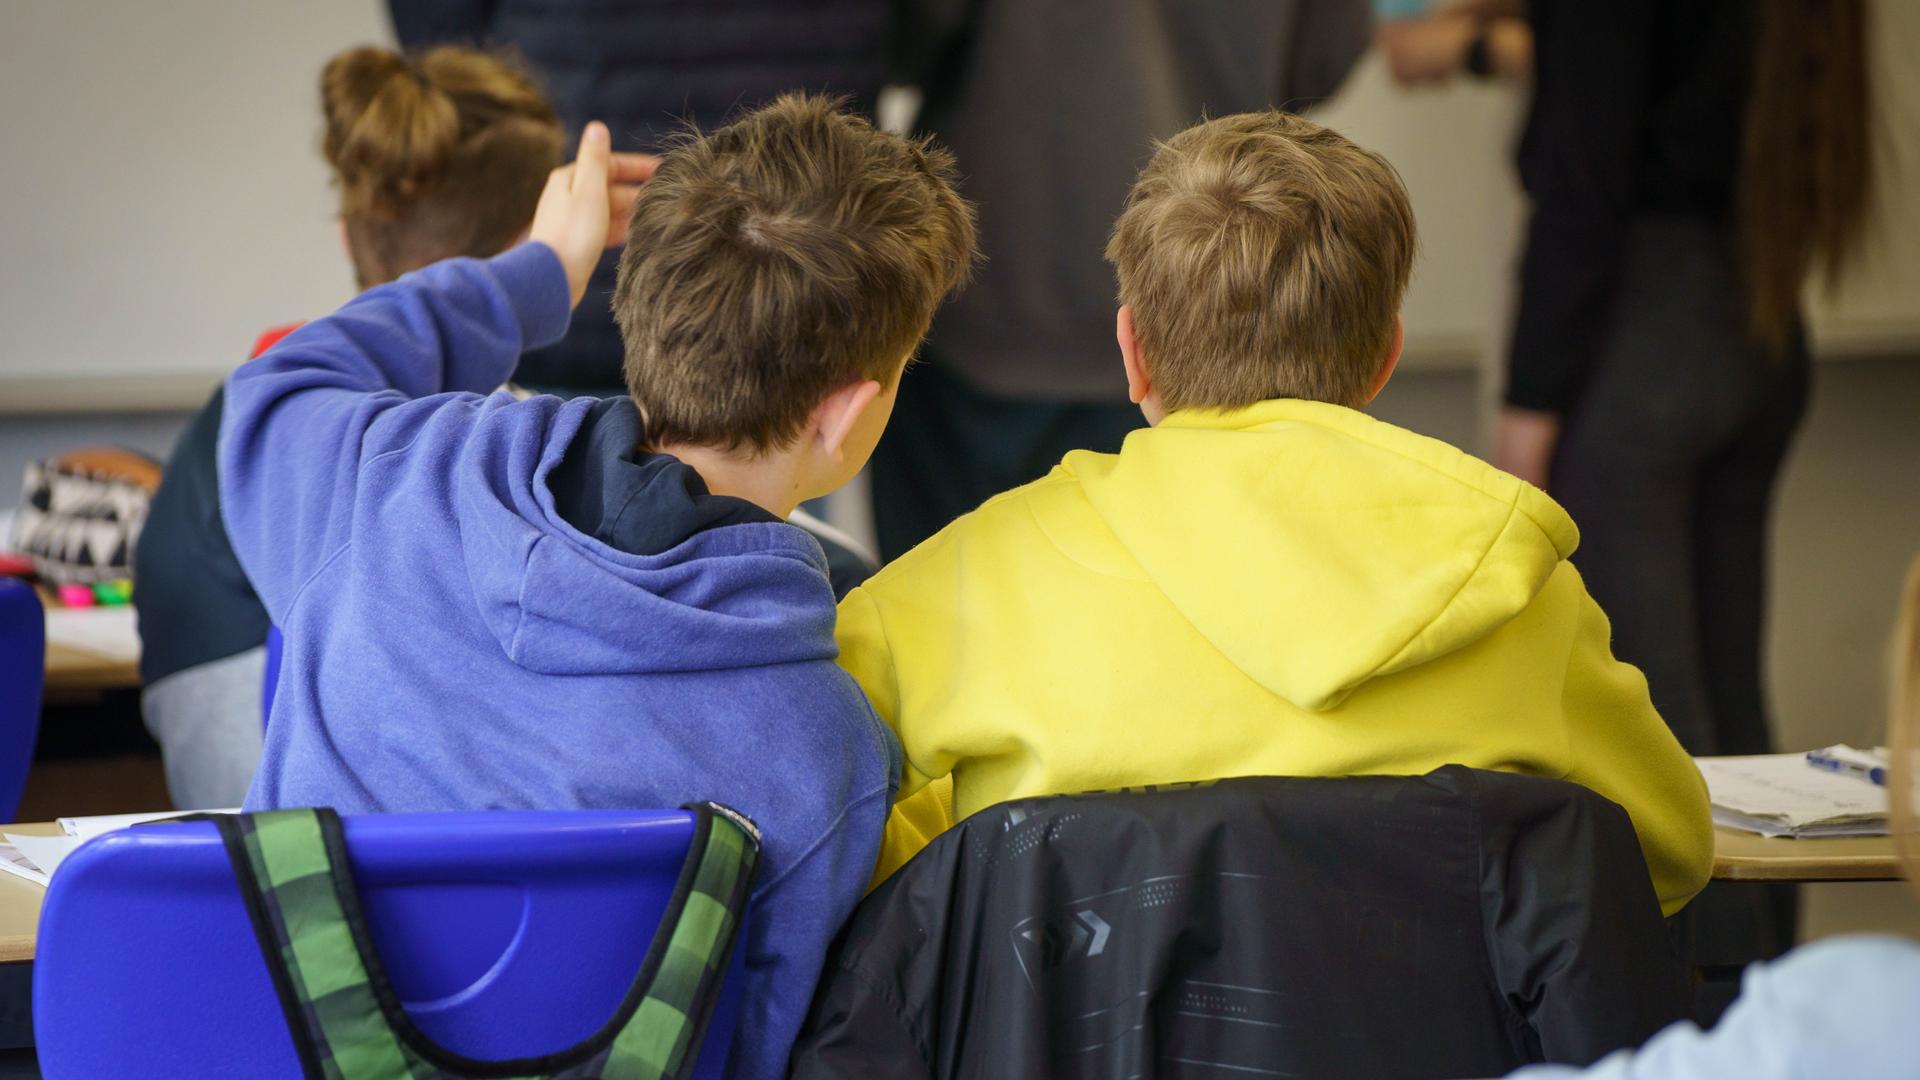 Zwei aus der Ukraine geflüchtete Schüler sitzen in einem Gymnasium an einem Tisch. Der eine trägt einen blauen Pulli, der andere einen gelben - die Nationalfarben der Ukraine.